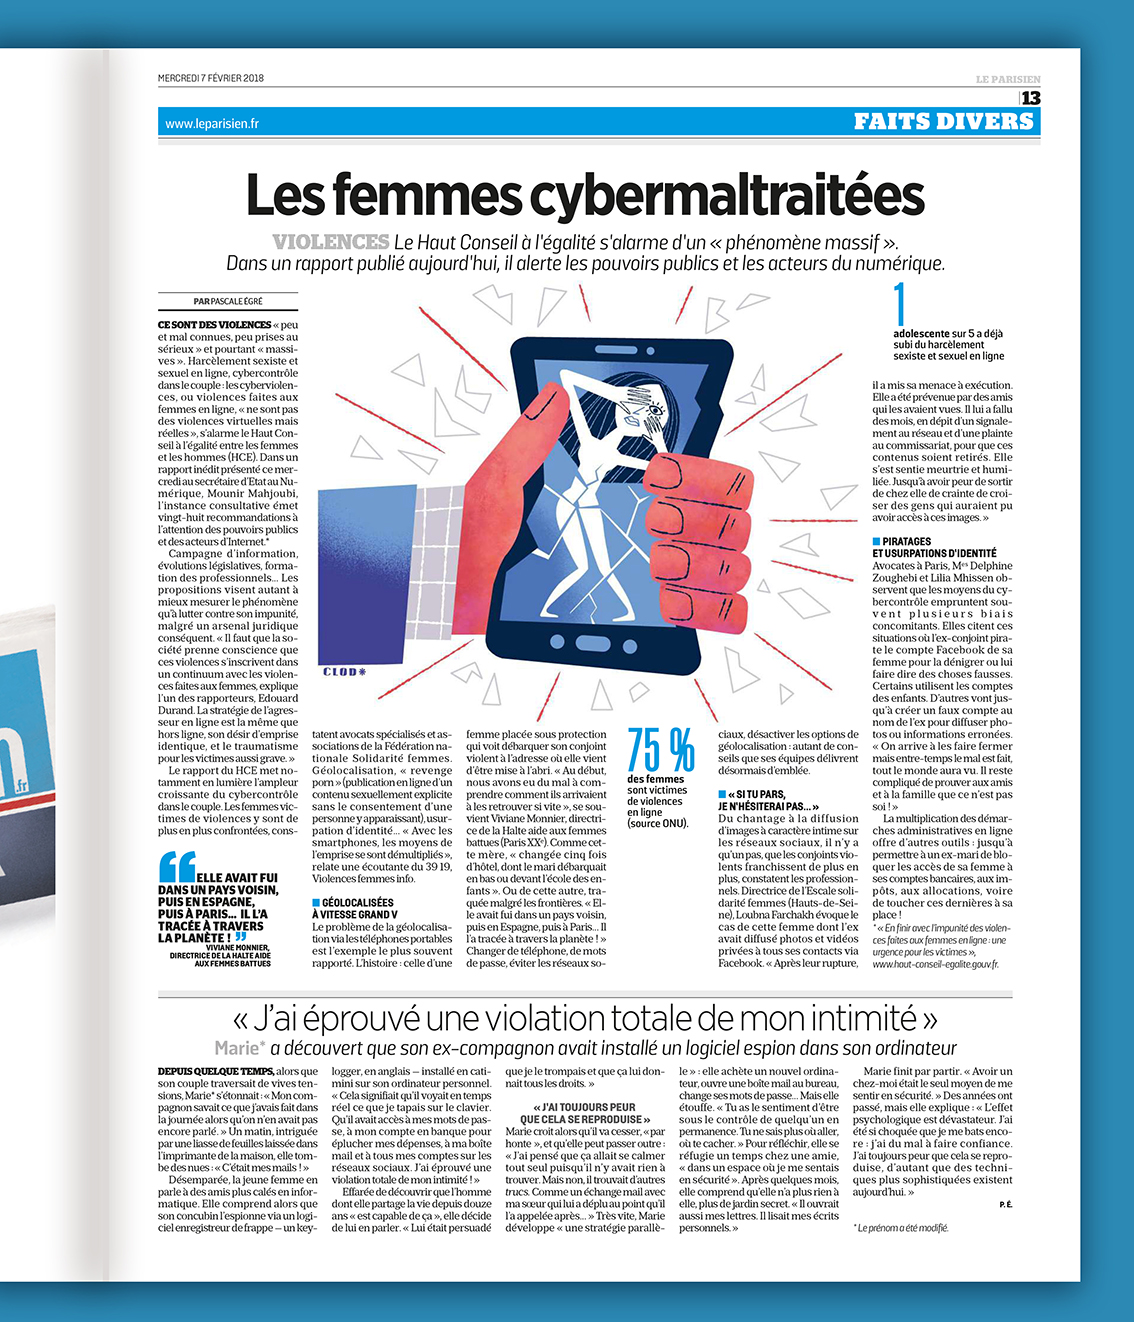 Clod illustration Le Parisien fait-divers cyberviolences faites aux femmes